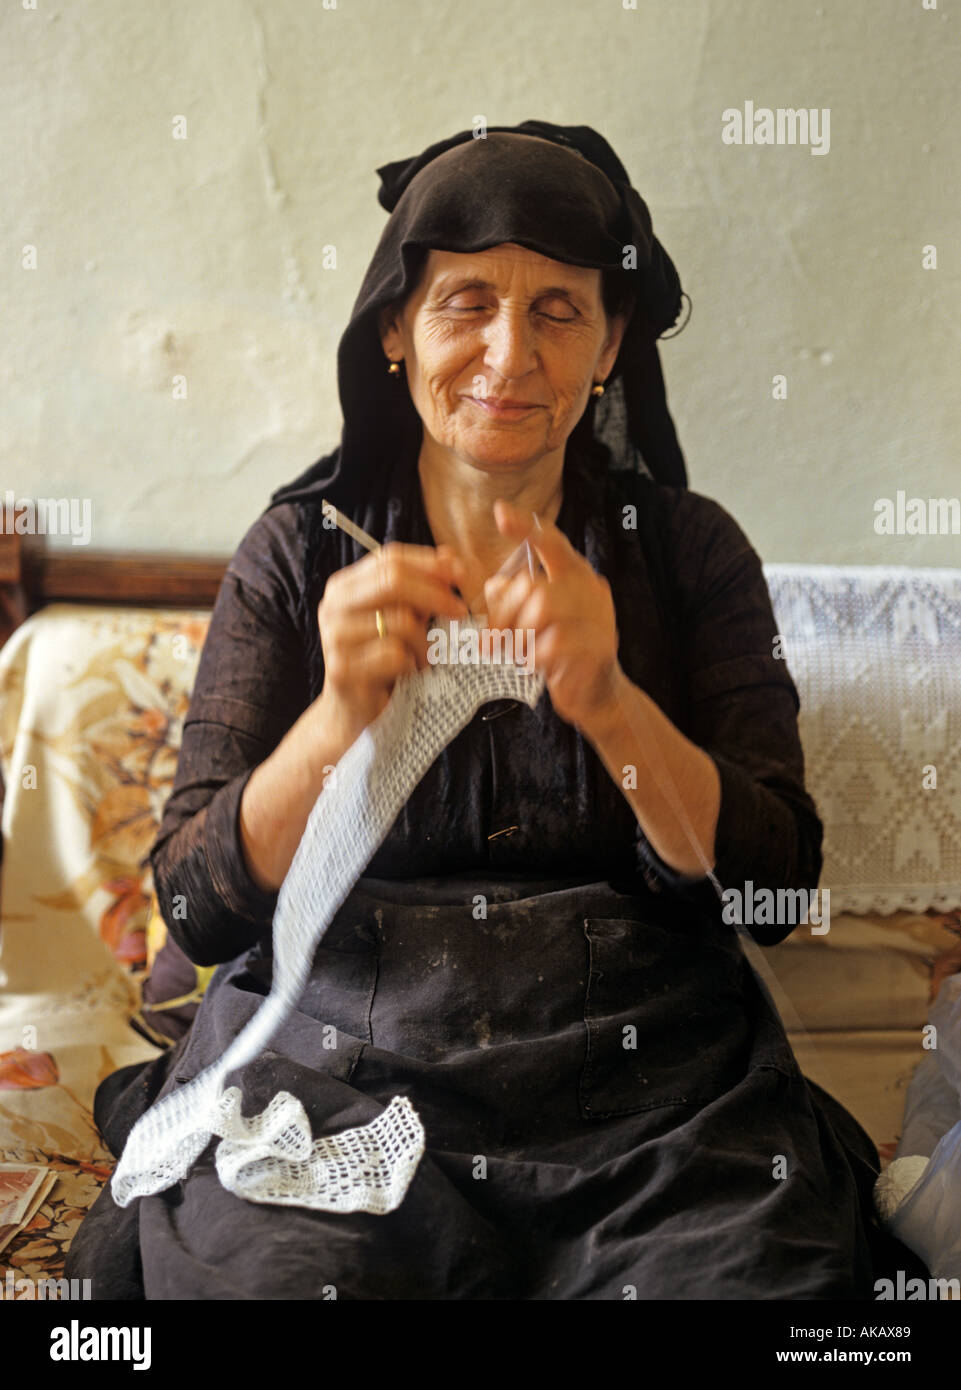 Vieille dame assise travail artisanal Grèce Banque D'Images